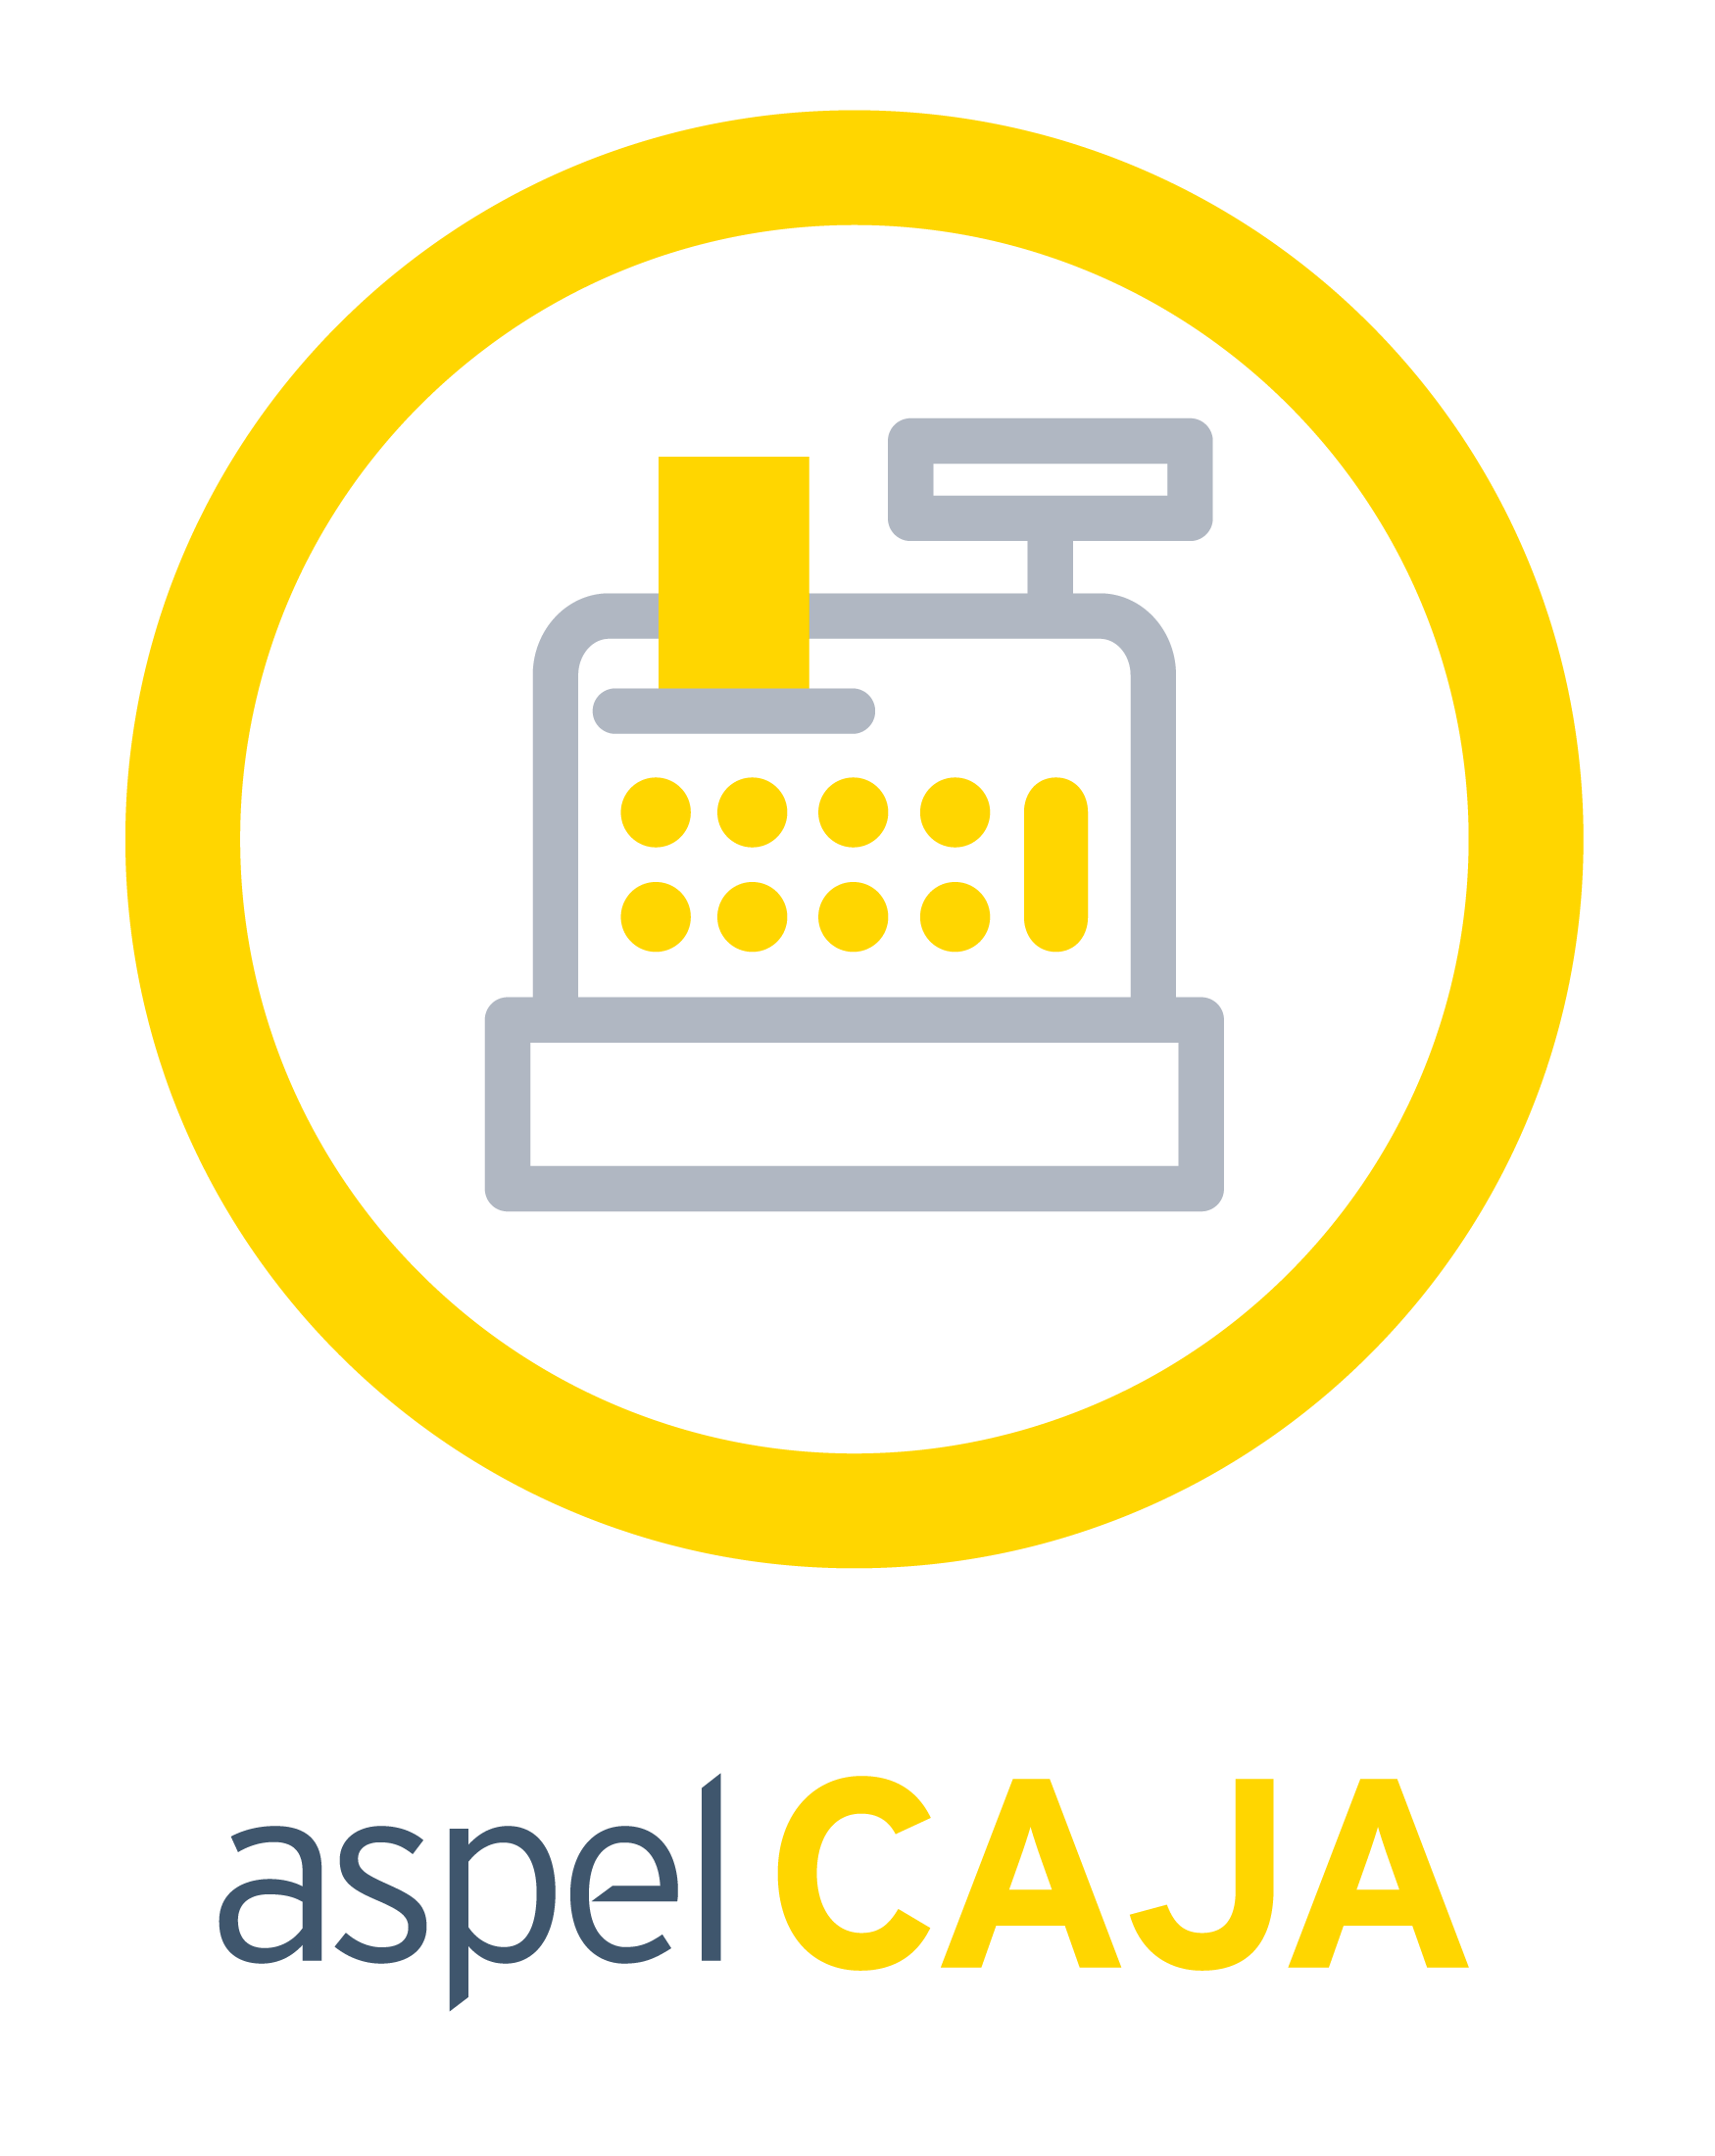 ASPEL CAJA V5.0, 1 USR 1 EMPRESA (CAJA1FV)